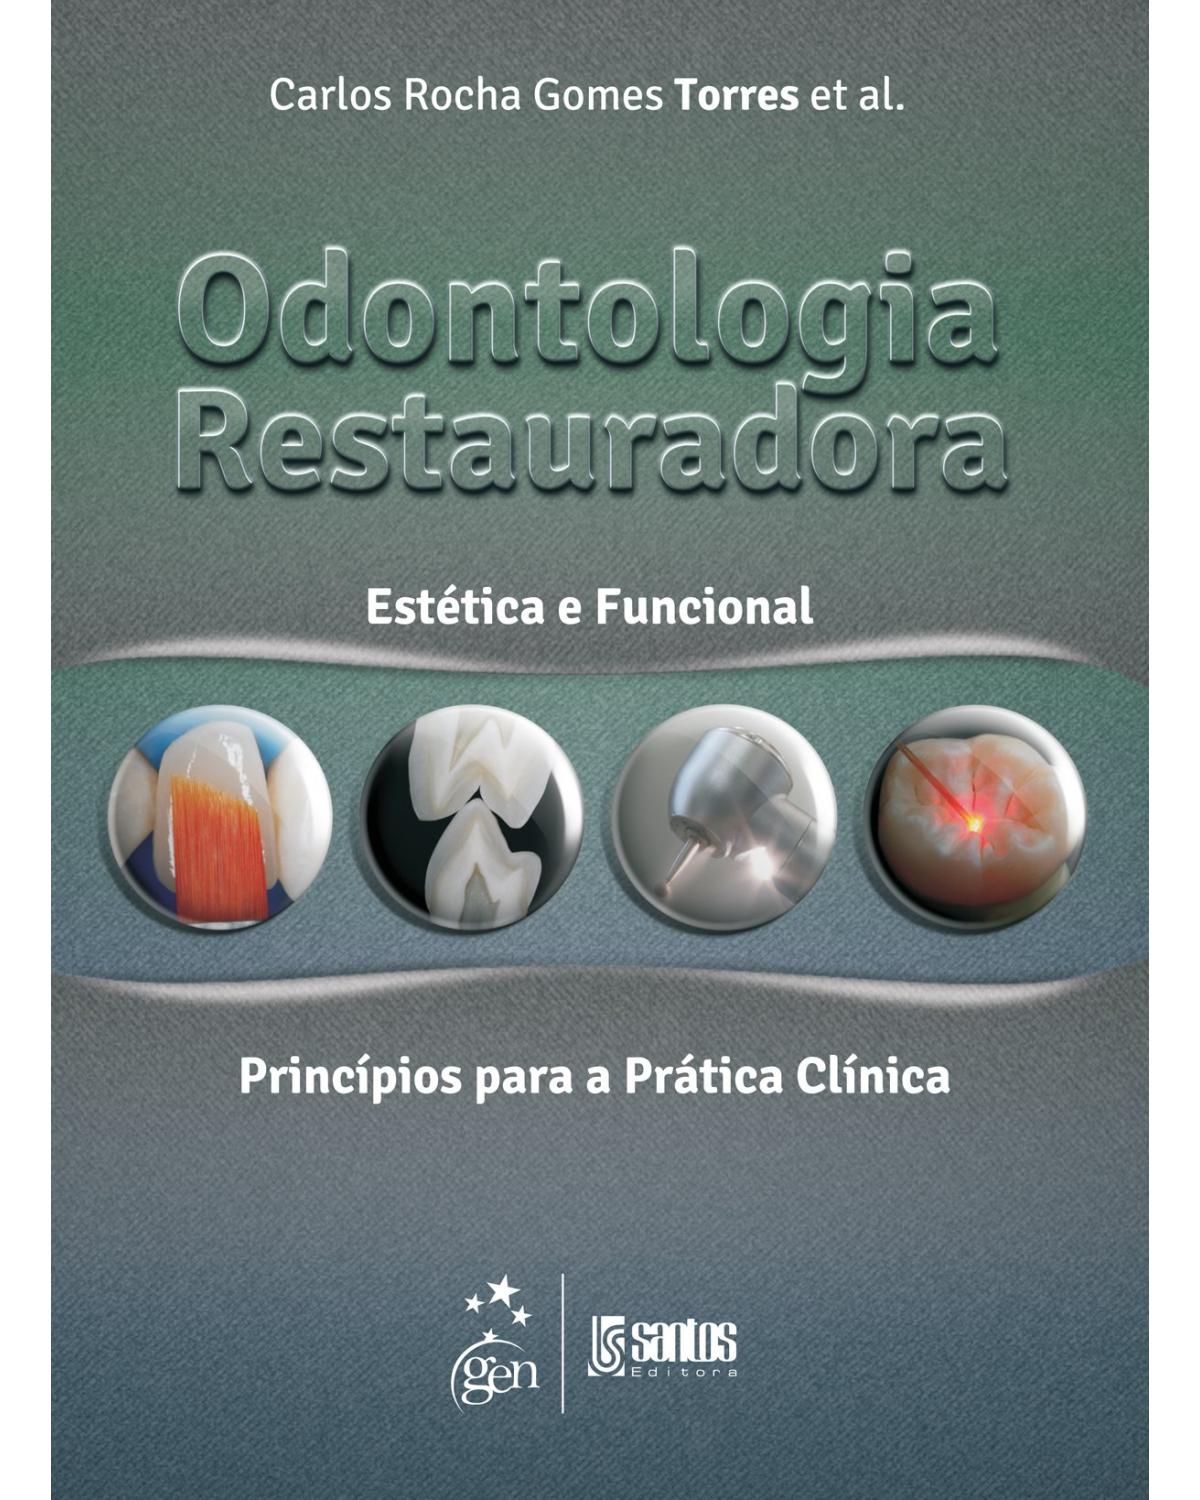 Odontologia restauradora - Estética e funcional - Princípios para a prática clínica - 1ª Edição | 2013